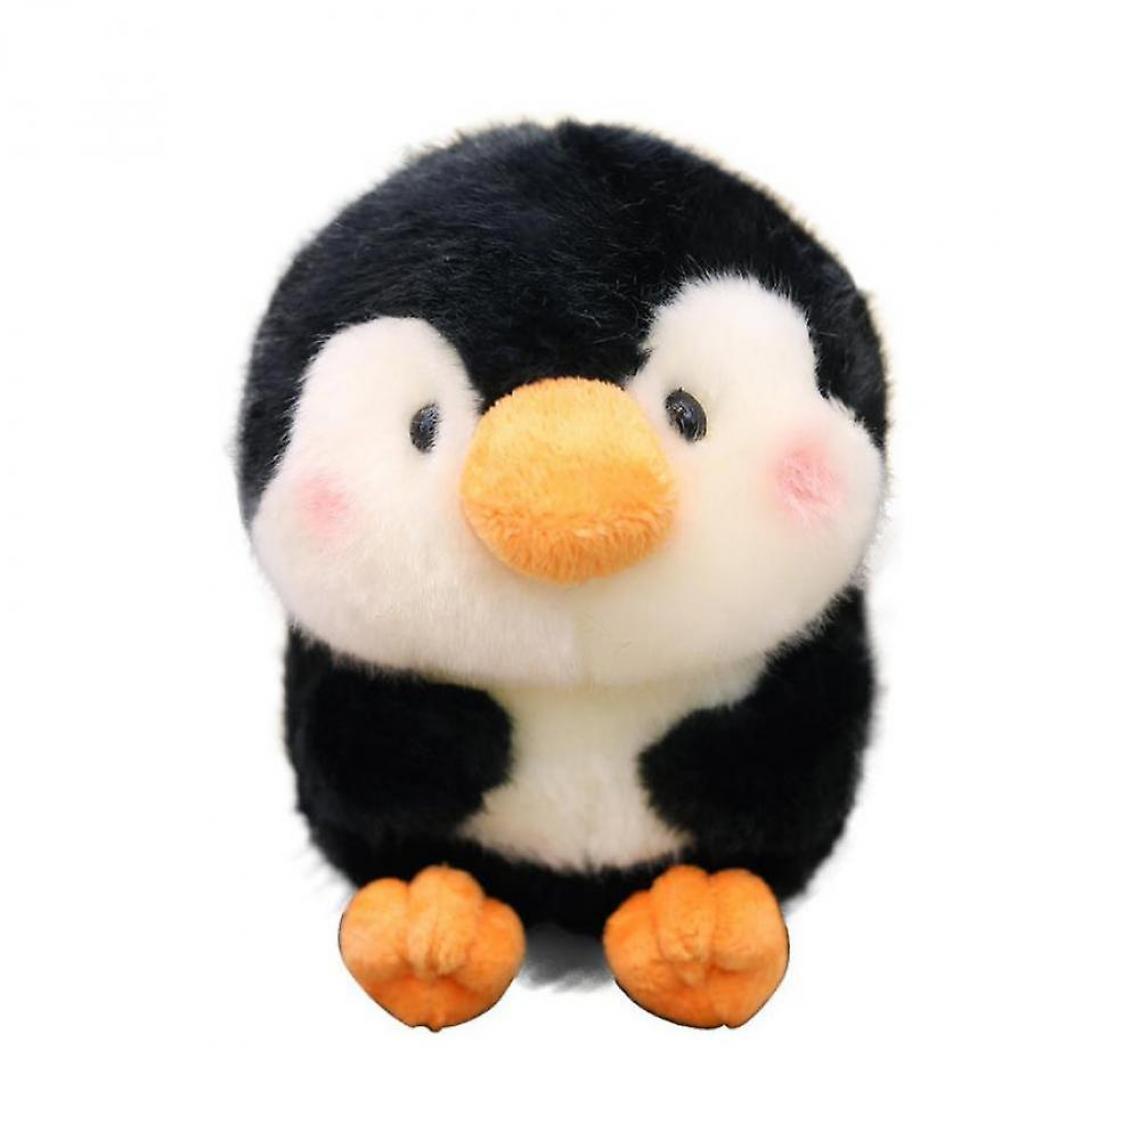 Universal - 7.1 Animaux en peluche Joli jouet en peluche - Cadeau parfait pour les enfants (pingouins noirs) - Animaux